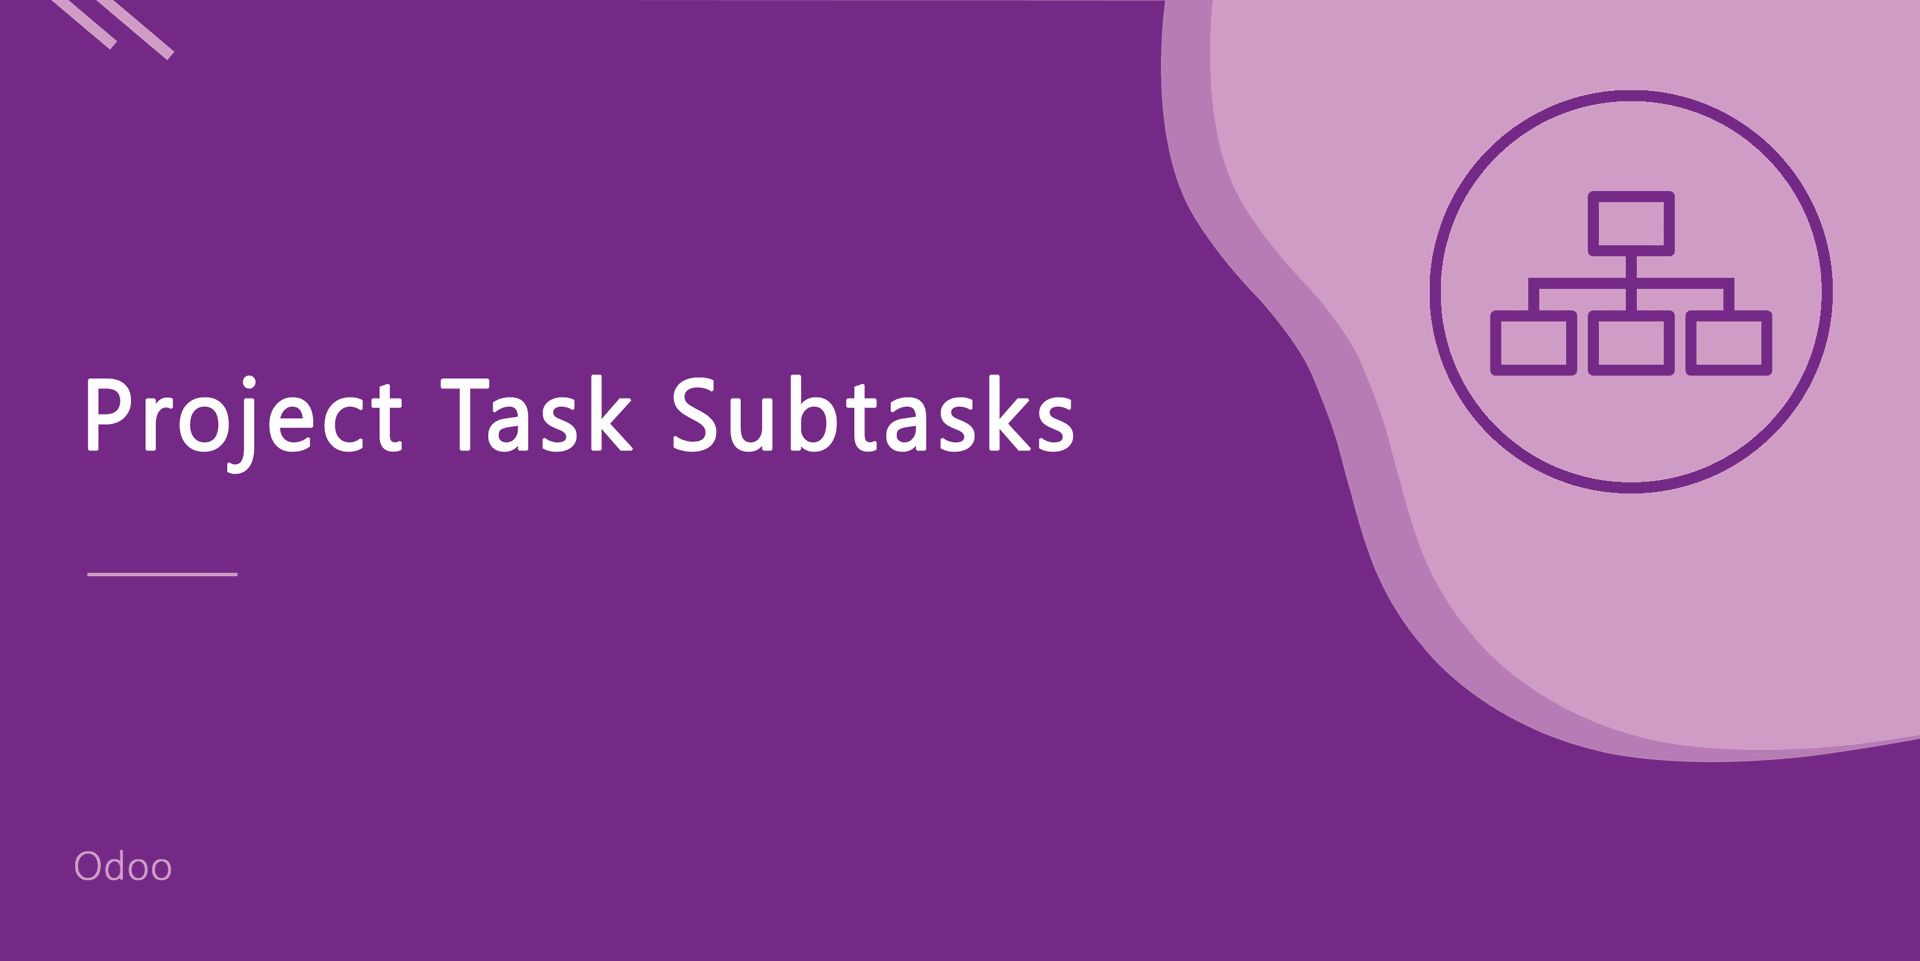 Project Task Subtasks
